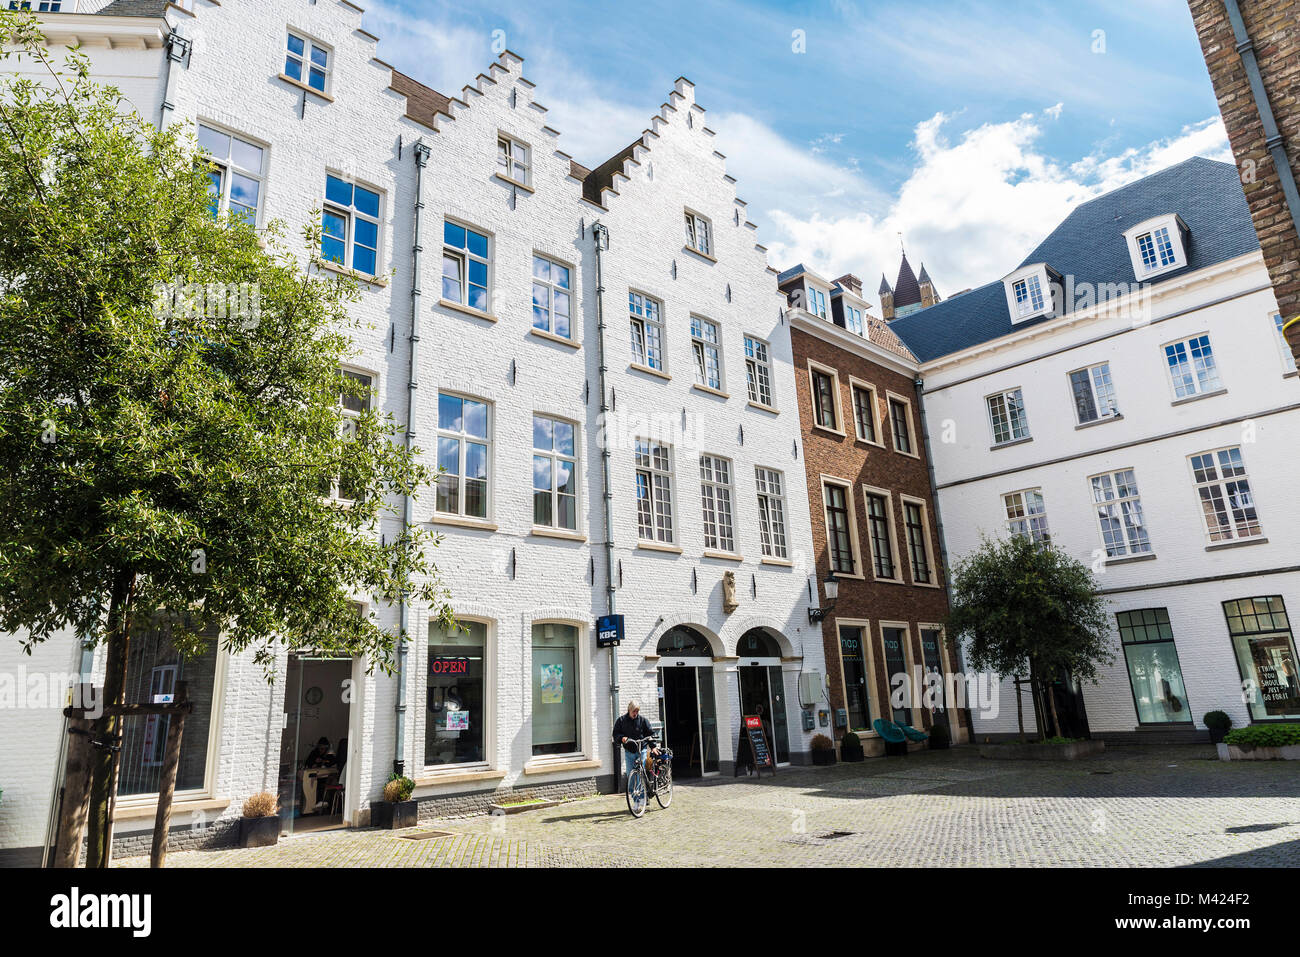 Bruges, Belgio - 1 Settembre 2017: facciata di vecchi edifici storici con la gente in giro per la città medioevale di Bruges, Belgio Foto Stock